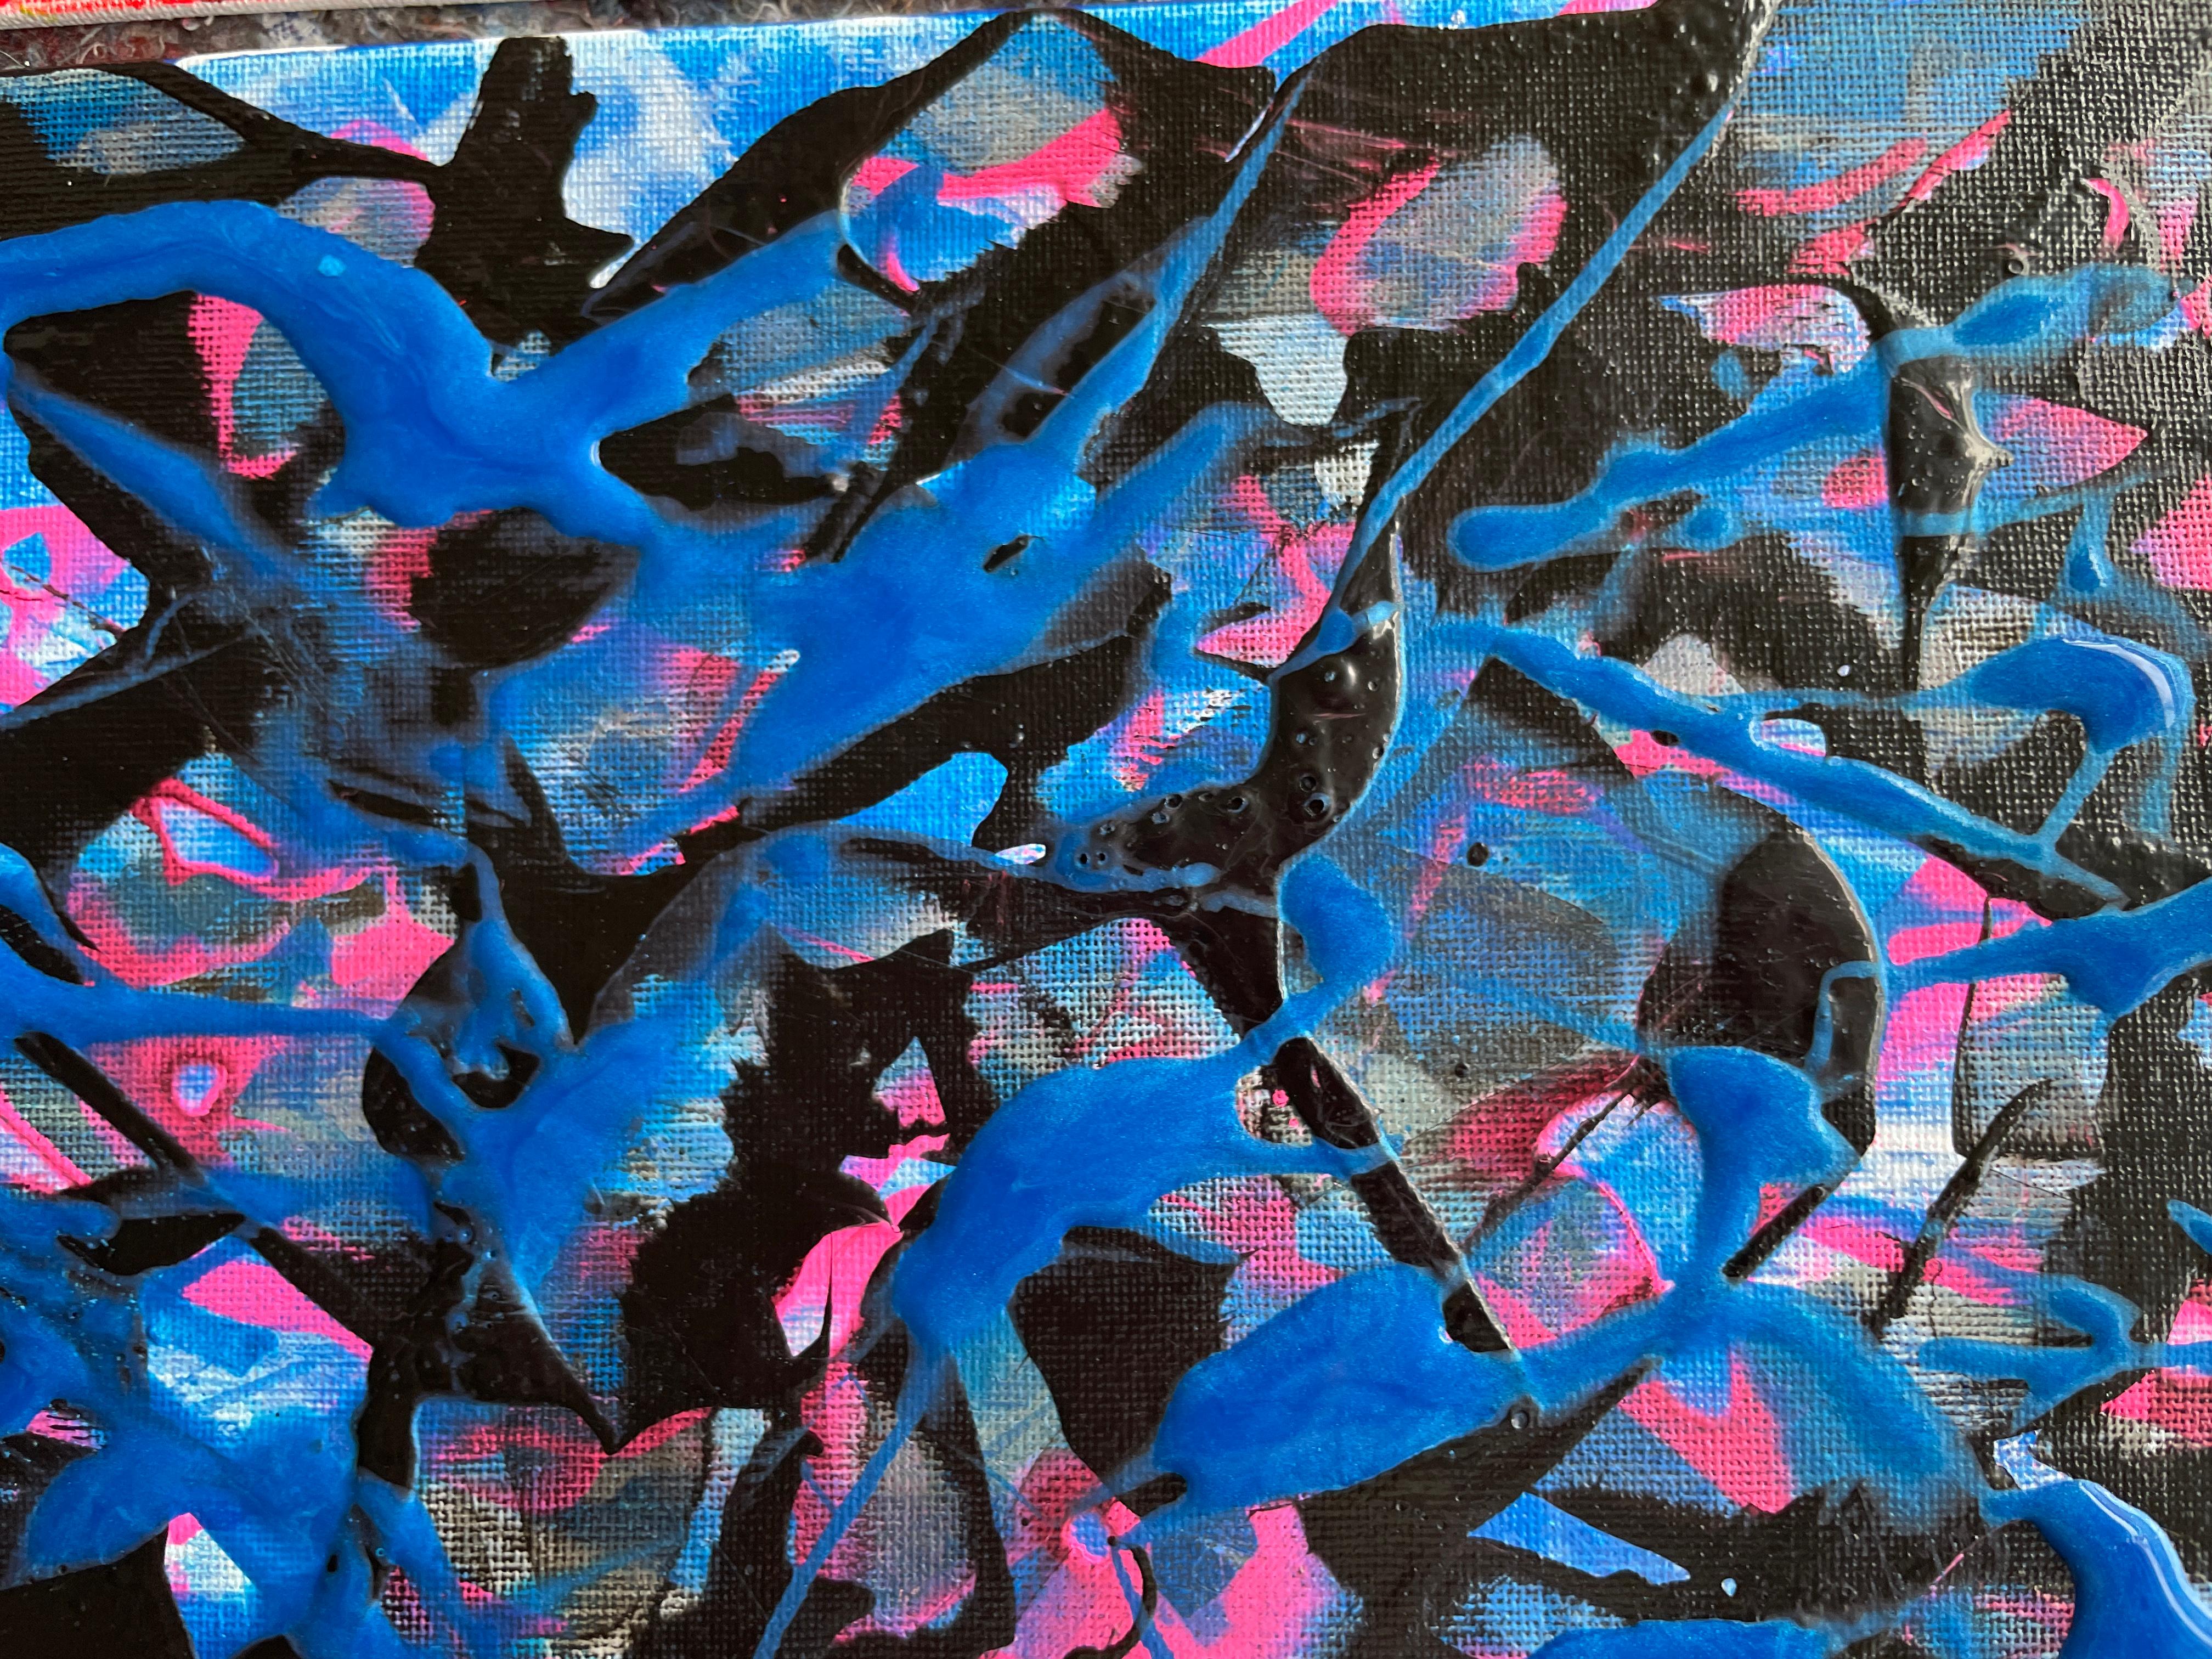 Dans cette œuvre, j'ai déversé ma passion en utilisant des acryliques pour évoquer la profondeur et le mouvement. Les bleus et les blancs s'entremêlent, reflétant des émotions abstraites qui s'écoulent librement, comme les vagues de l'océan un jour